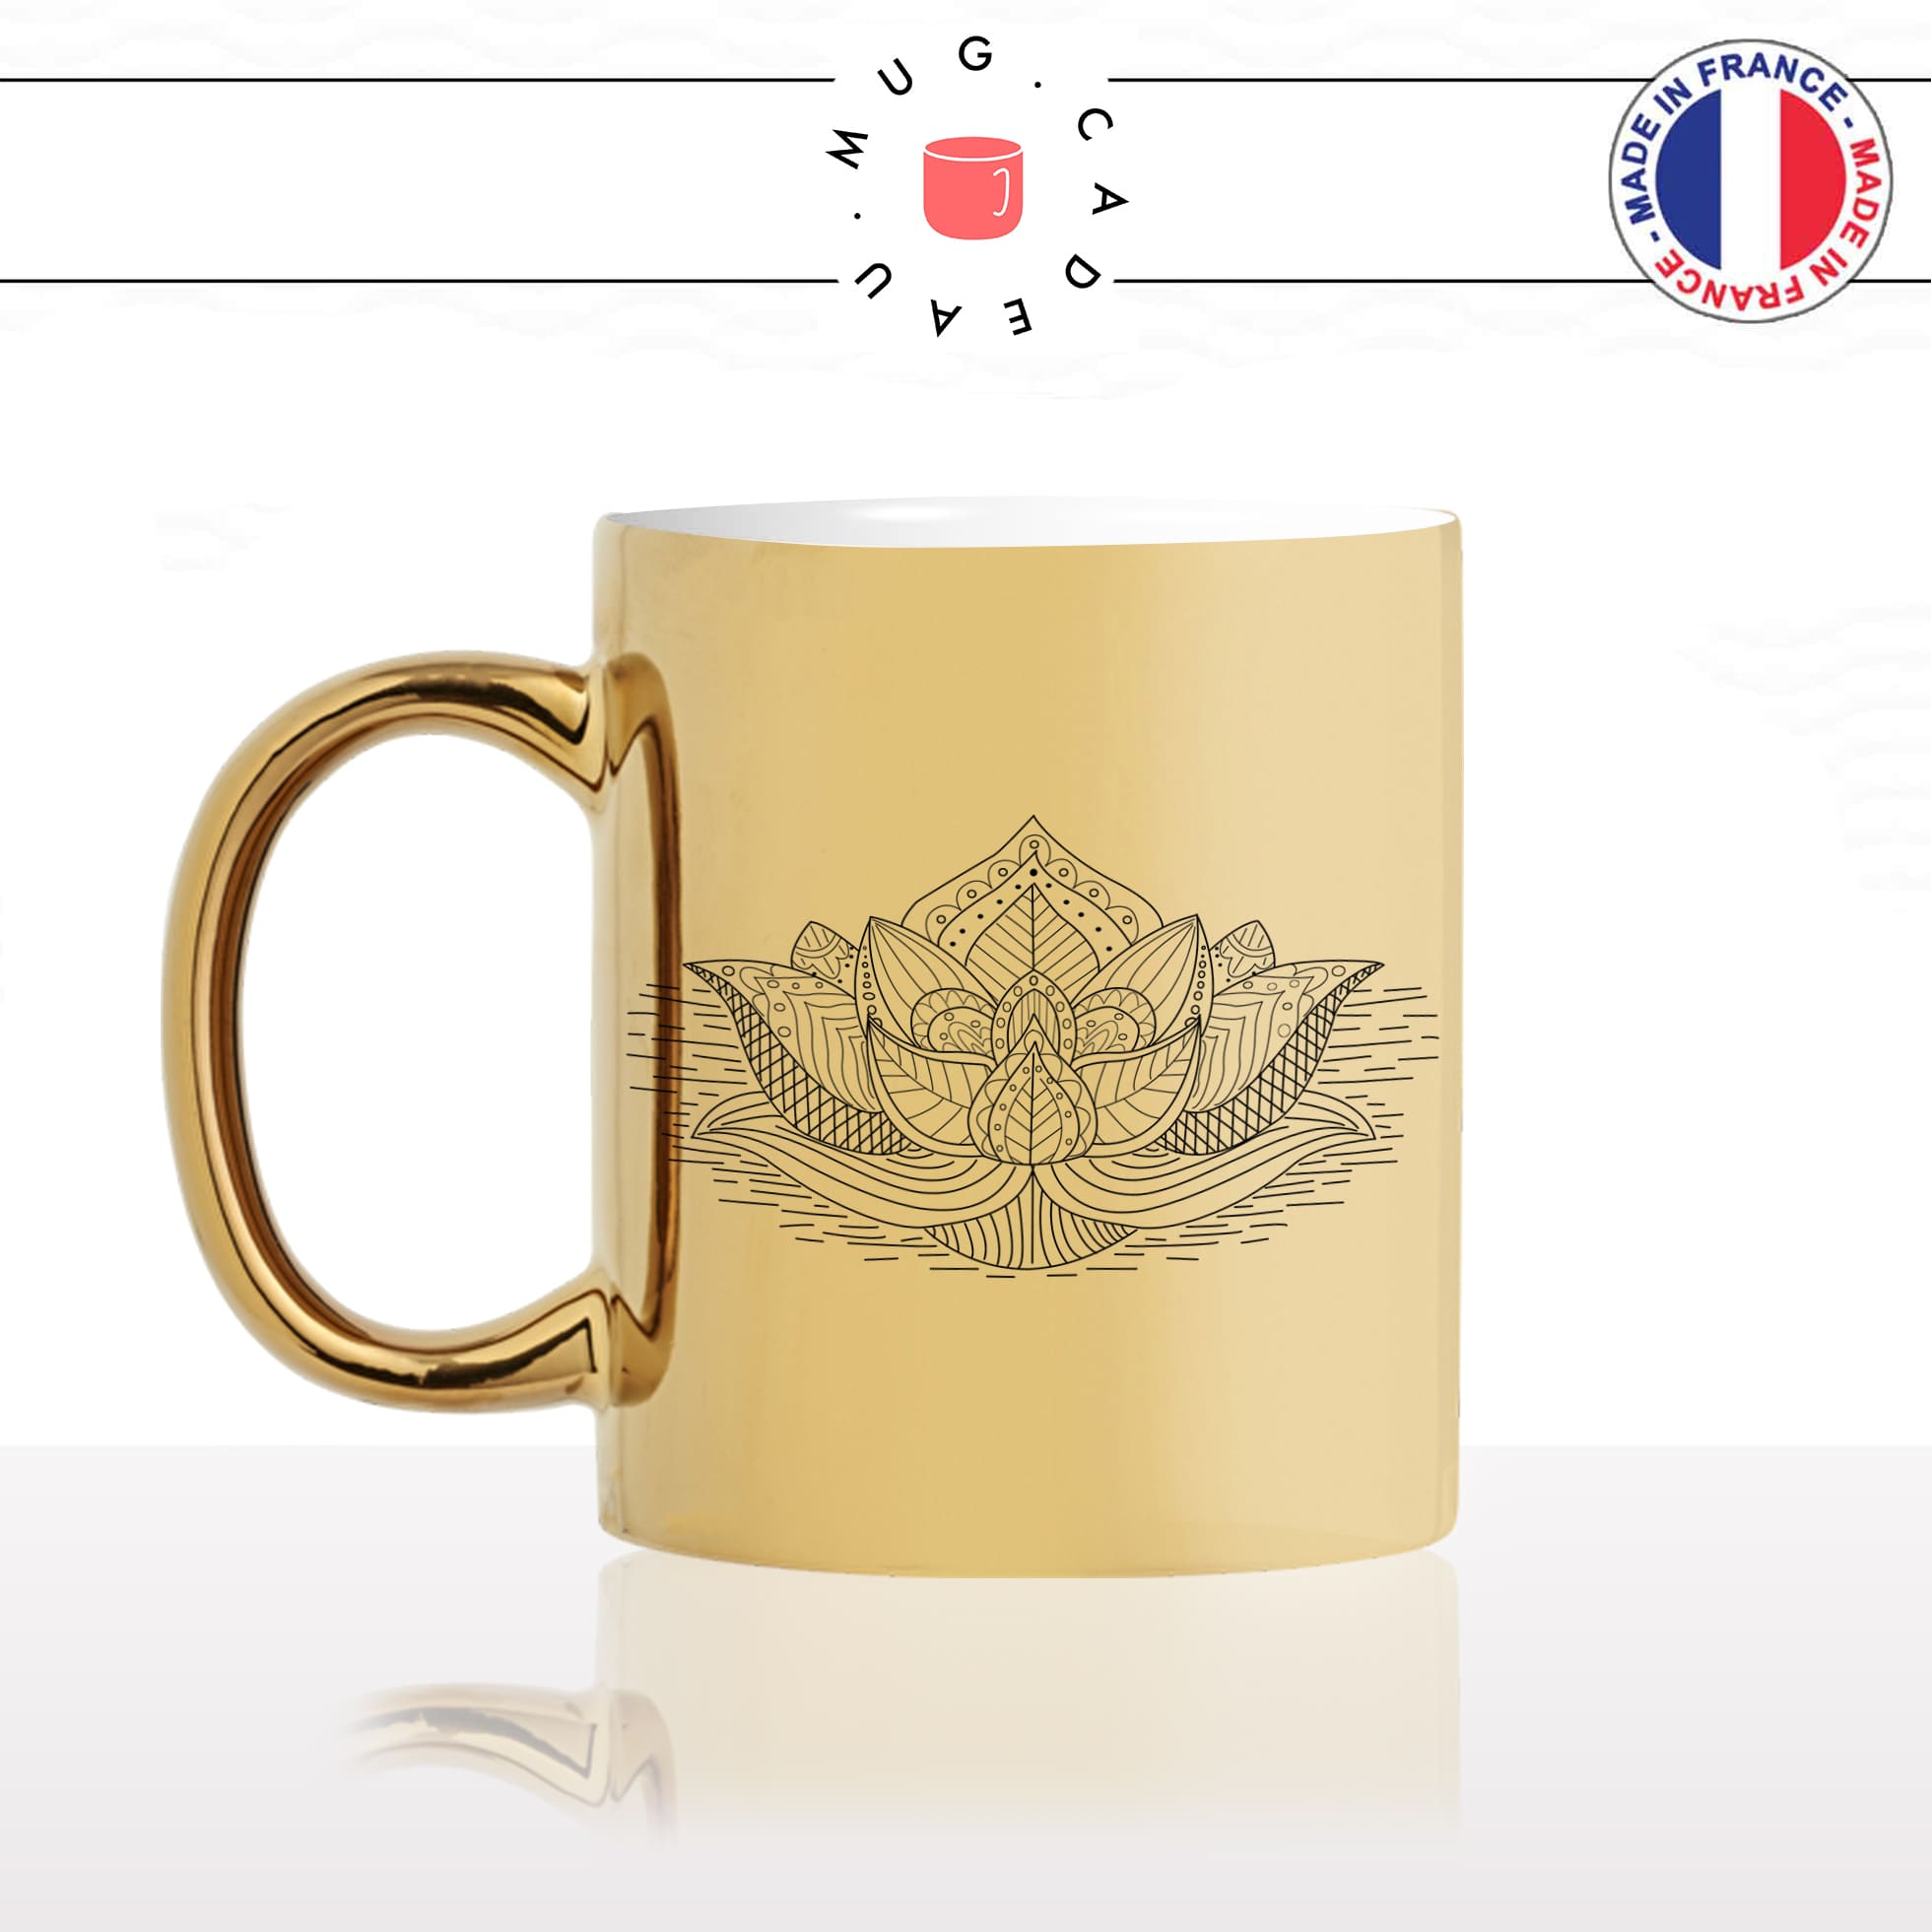 mug-tasse-doré-or-gold-fleur-de-lotus-dessinmeditation-bouddha-buddha-bouddiste-original-yoga-fun-idée-cadeau-personnalisé-café-thé